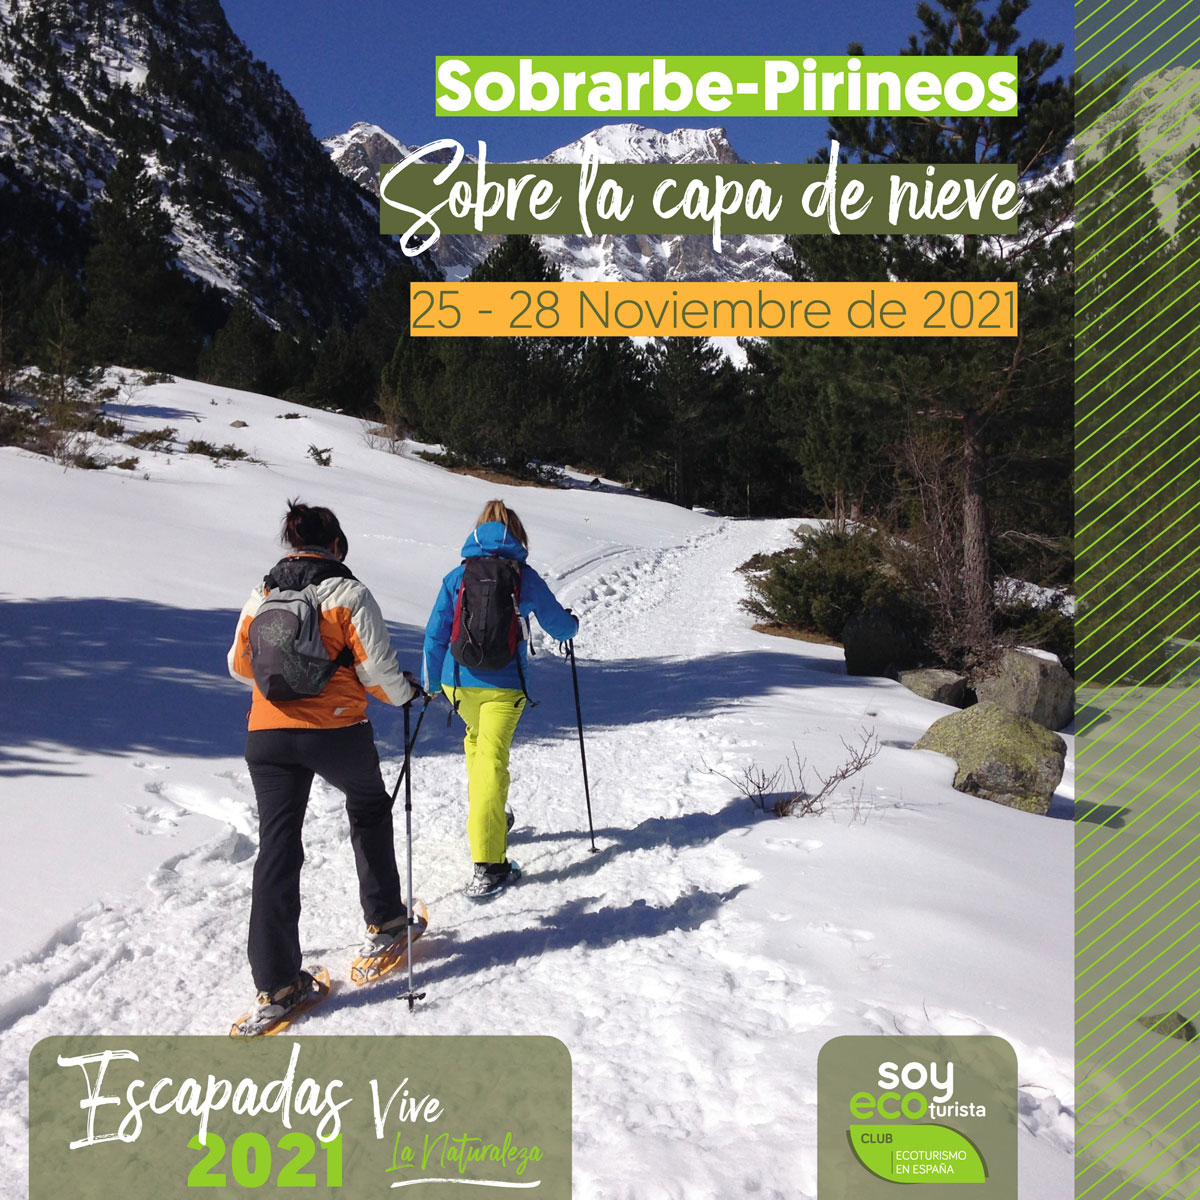 una escapada a Sobrarbe-Pirineos en noviembre para sentir el auténtico ecoturismo